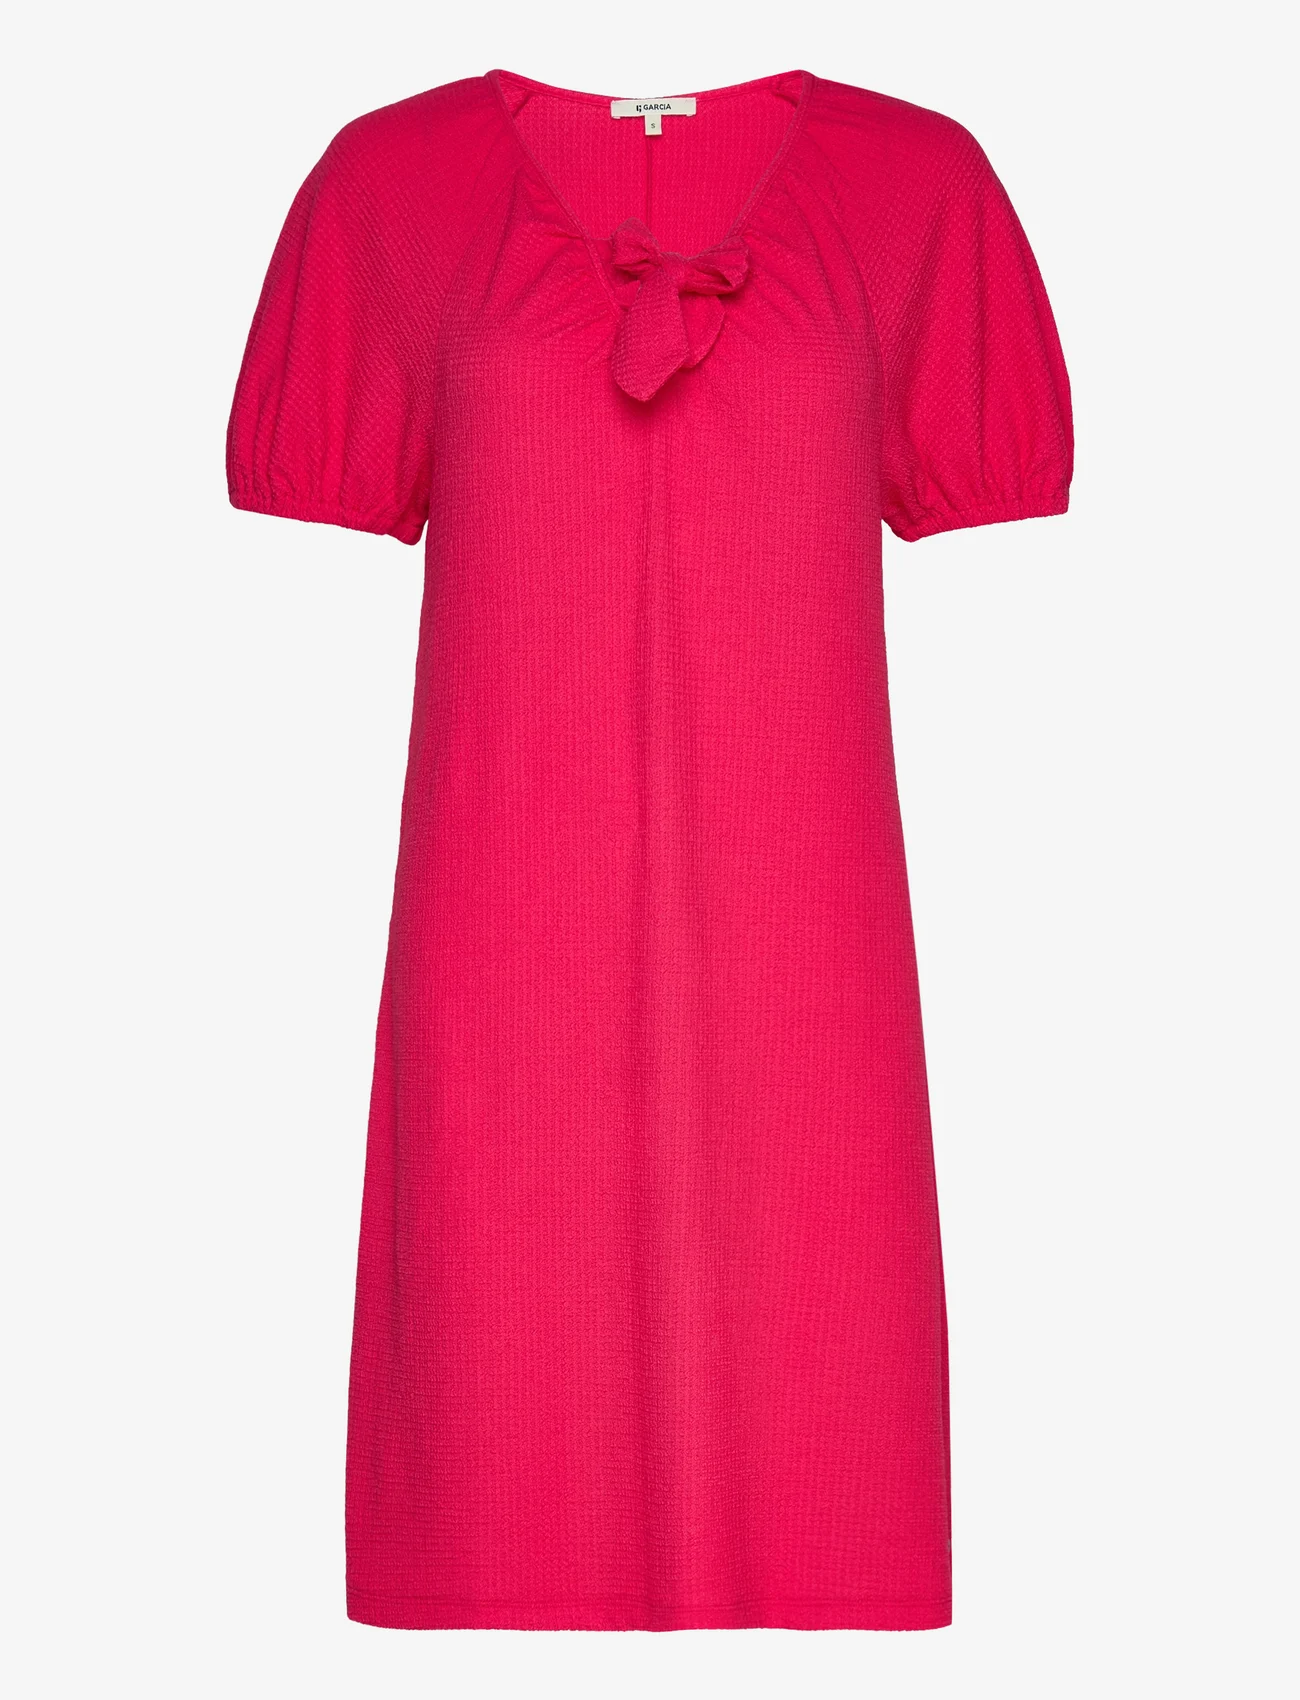 Garcia - ladies dress - summer dresses - rouge red - 0